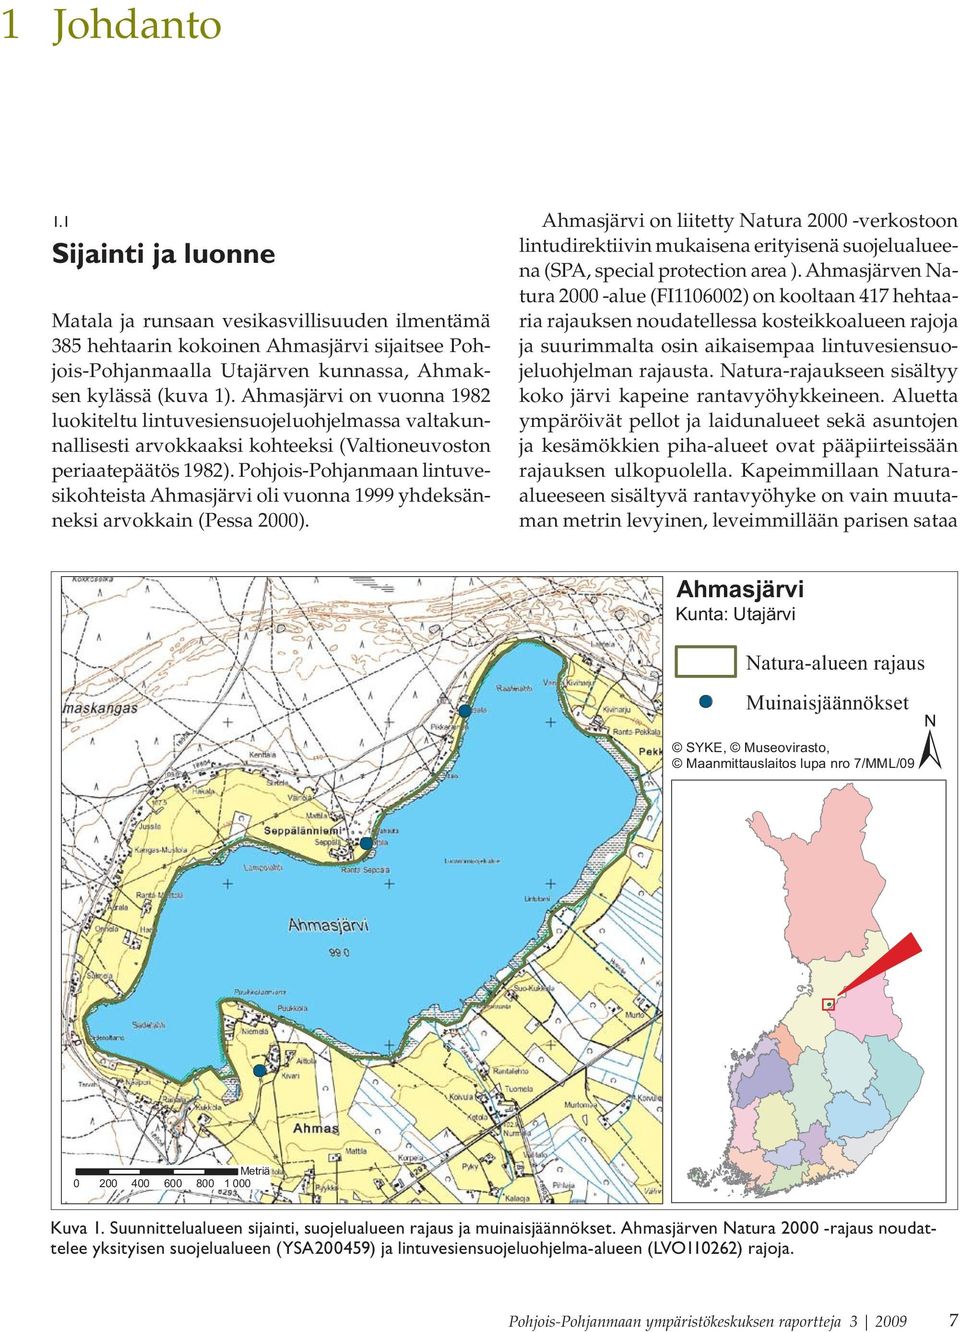 Pohjois-Pohjanmaan lintuvesikohteista Ahmasjärvi oli vuonna 1999 yhdeksänneksi arvokkain (Pessa 2000).